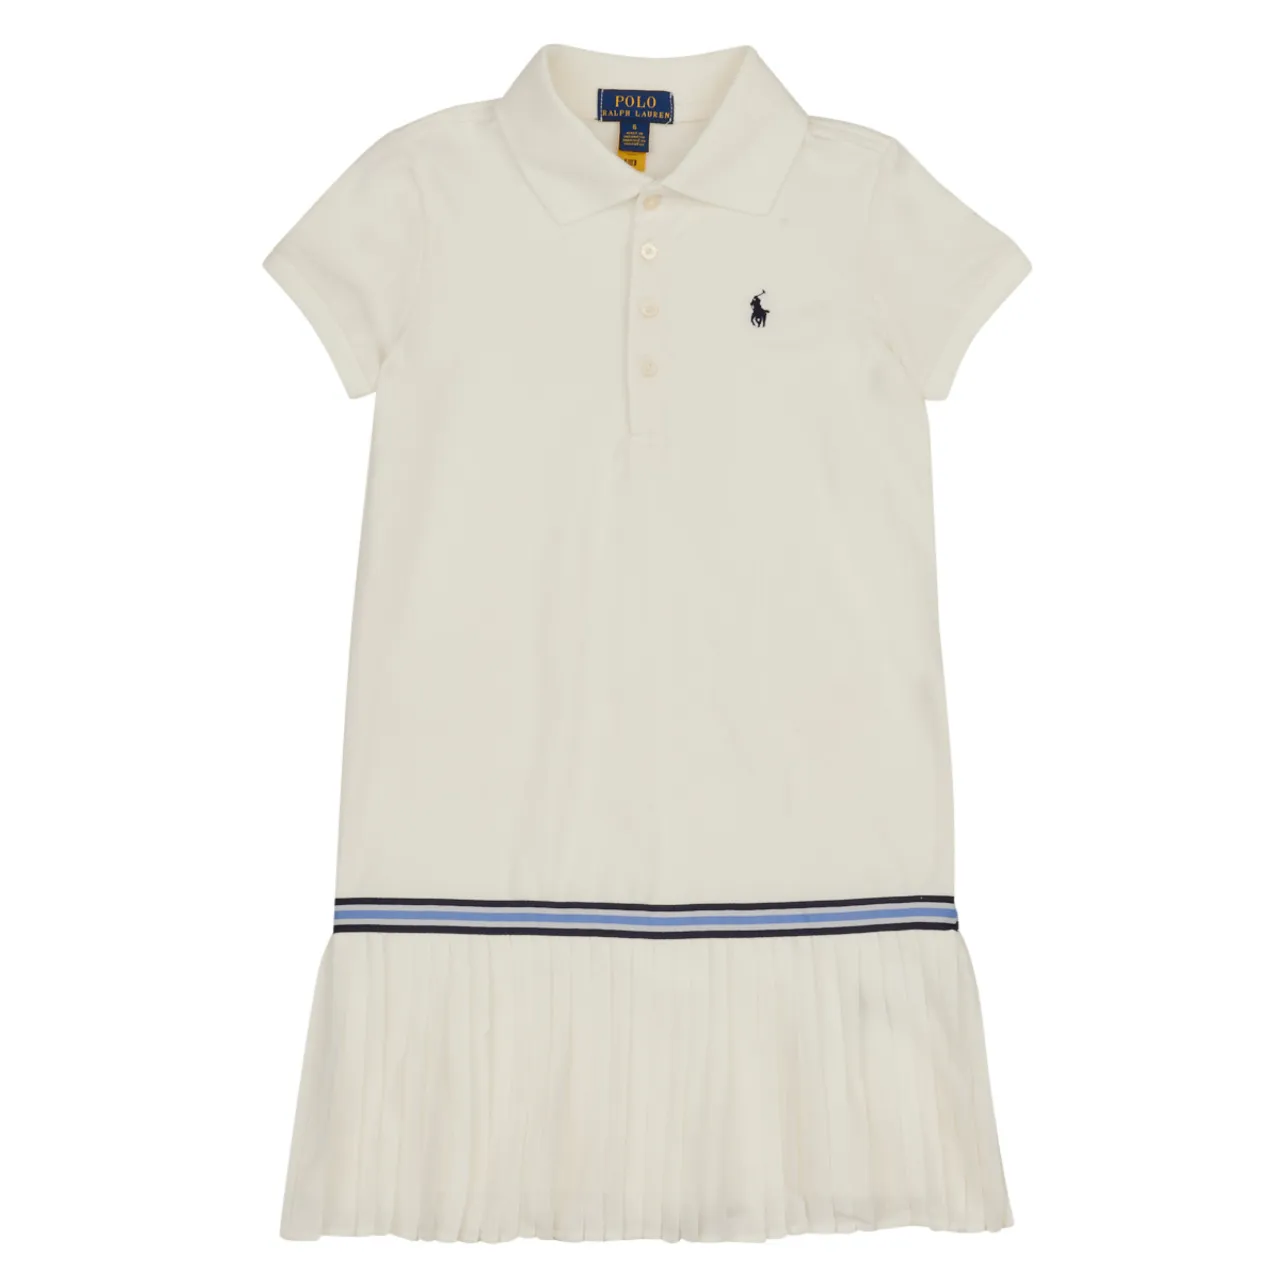 Polo Ralph Lauren  SS KC DRESS-DRESSES-DAY DRESS  girls's Children's dress in White